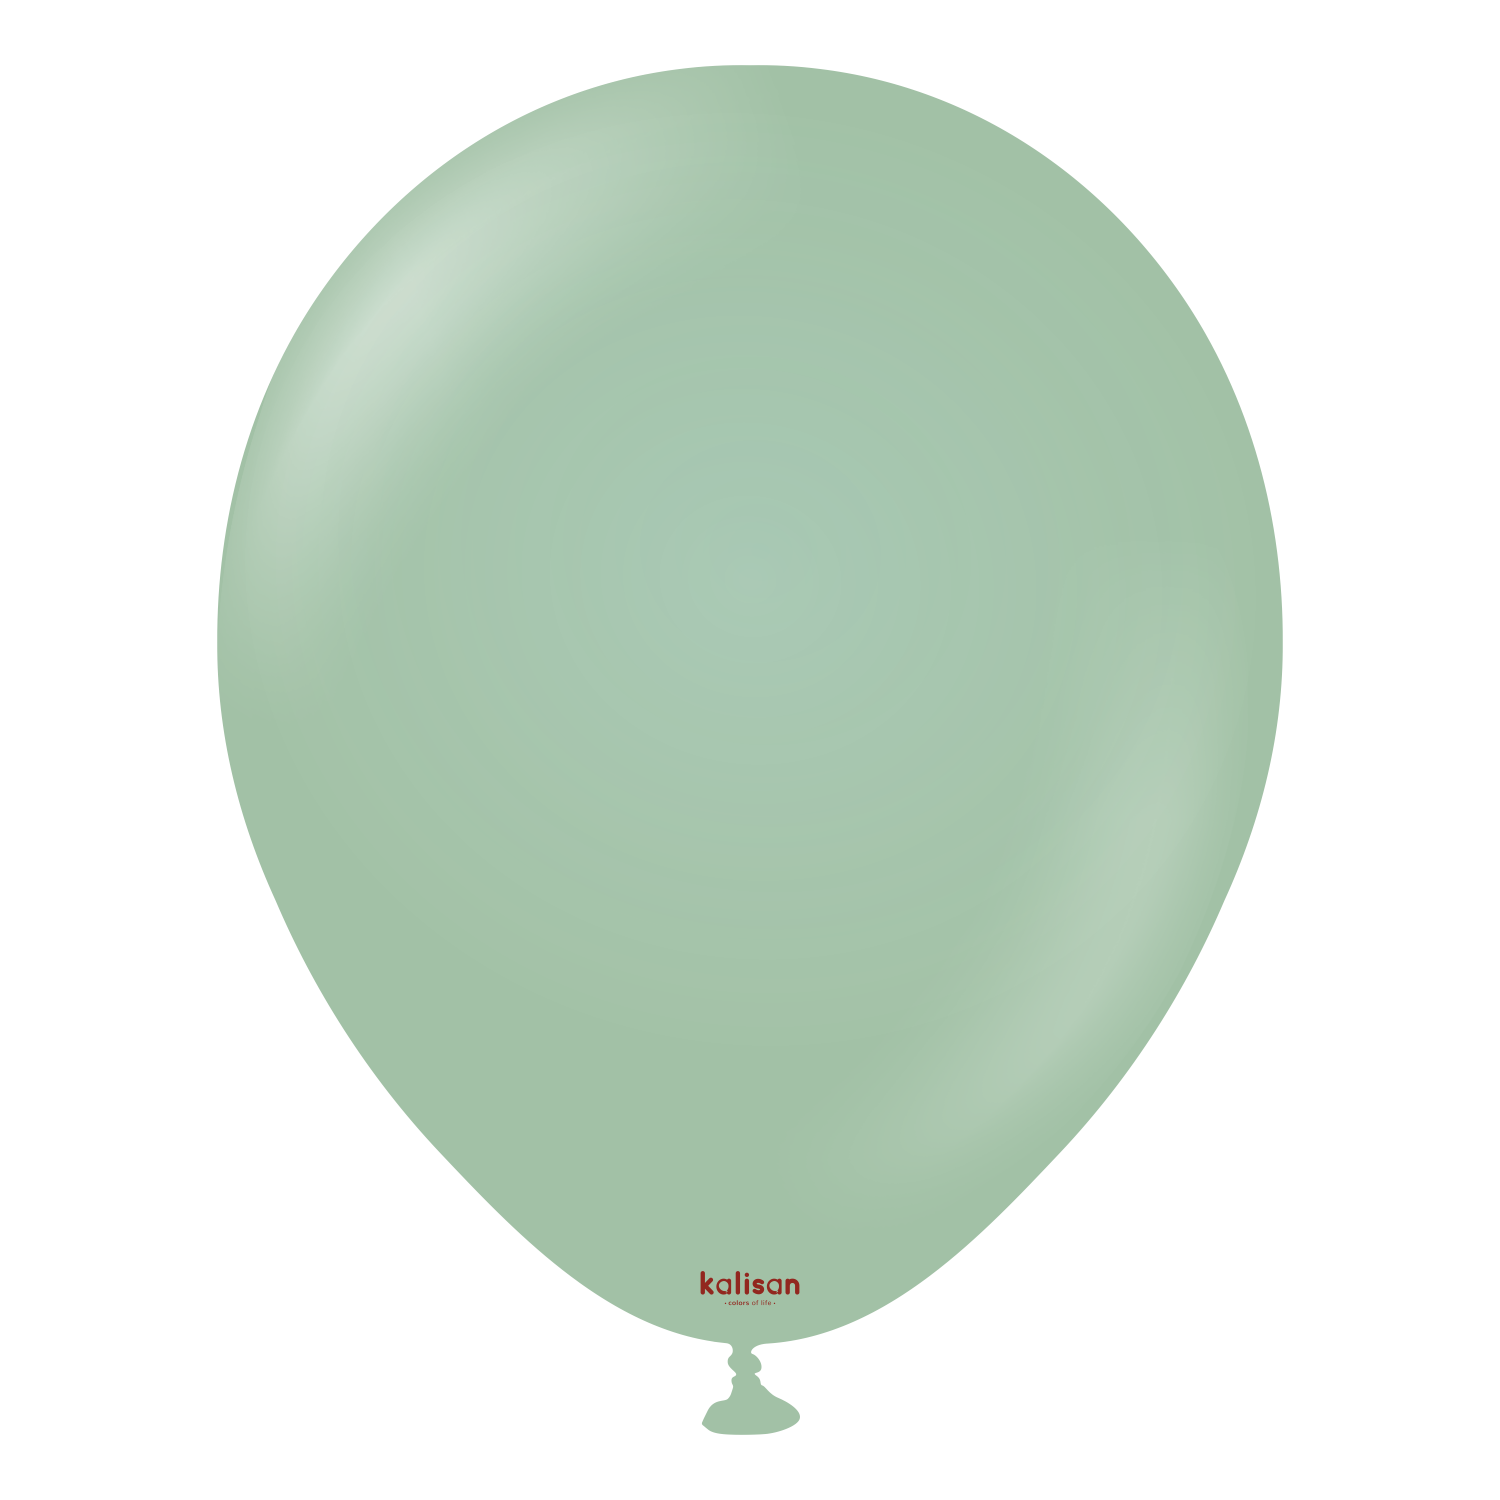 Premium ballong i vintergrønn farge fra Ballongriket